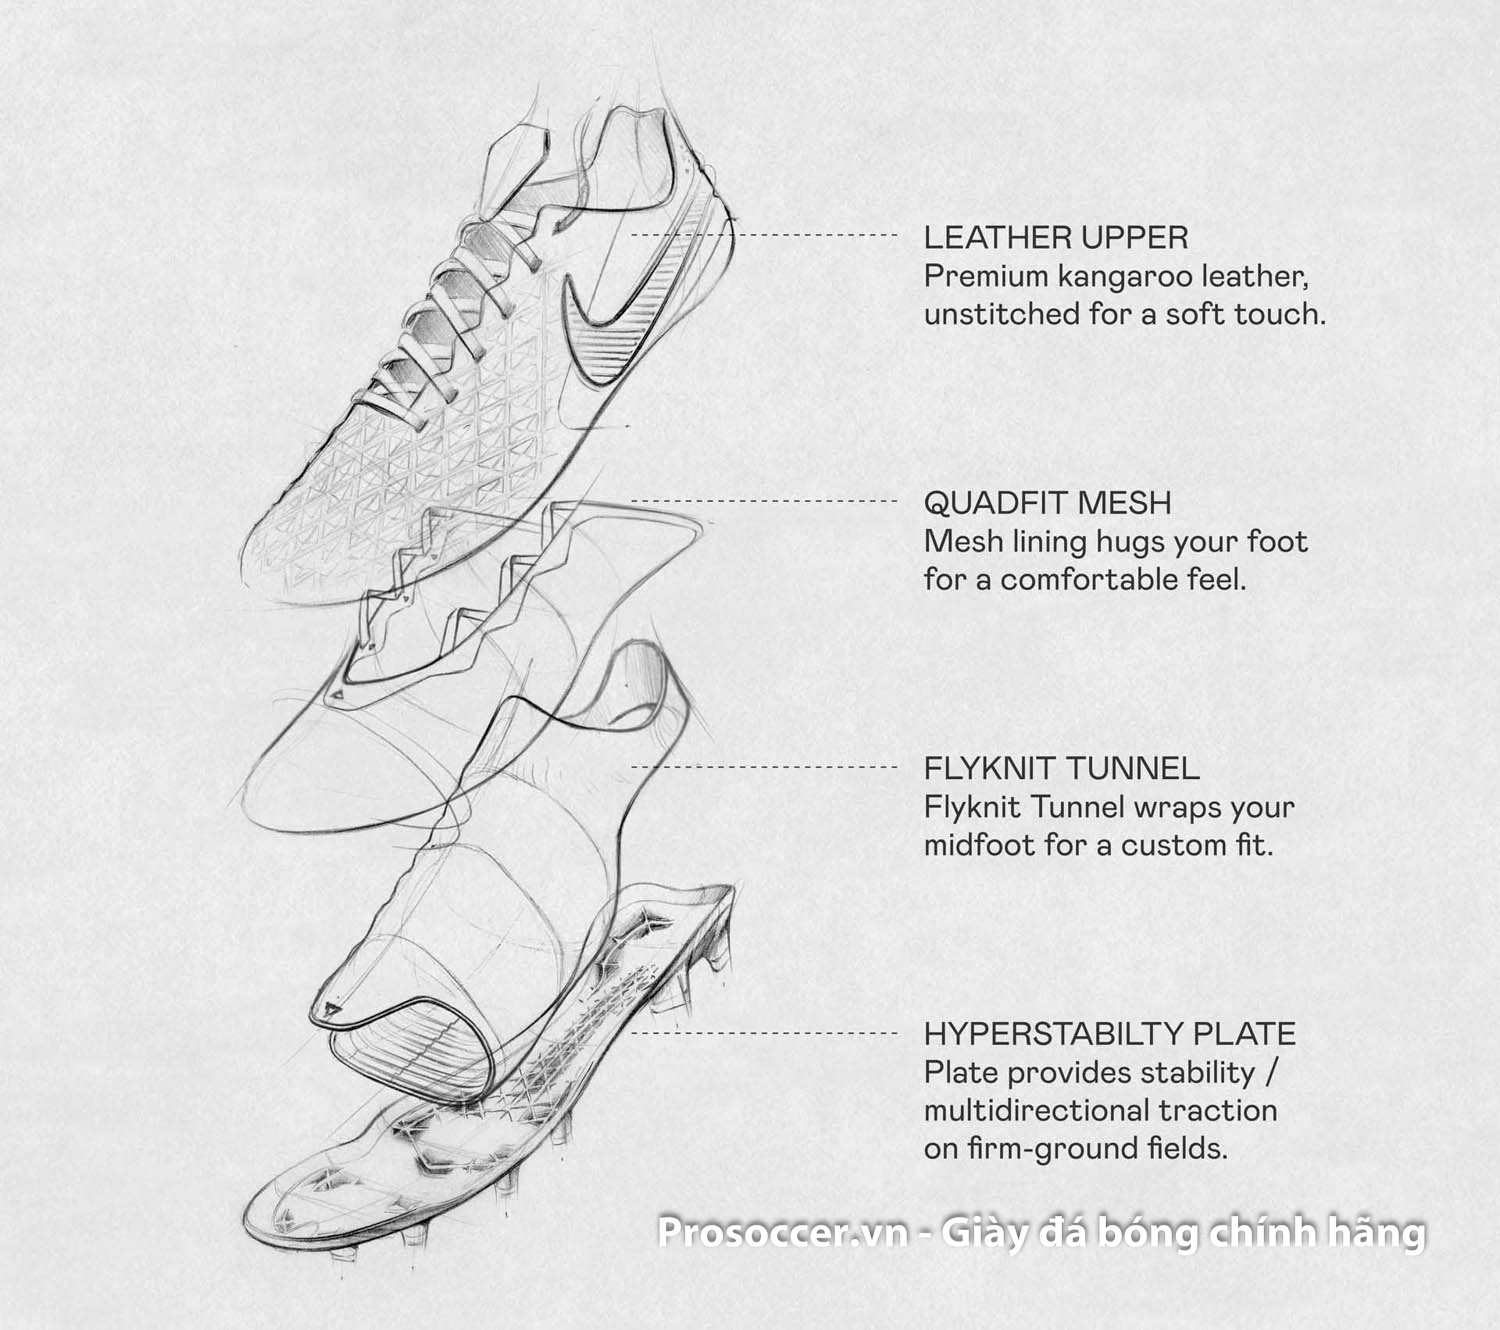 Nike Tiempo Legend 8 Elite FG: Đôi giày này được thiết kế cho những cầu thủ đích thực với những tính năng vượt trội như độ bền cao, độ chính xác và sự thoải mái tuyệt đối. Hãy xem đôi giày Nike Tiempo Legend 8 Elite FG này trong hành động trên sân cỏ để hiểu rõ hơn về sức mạnh của nó.